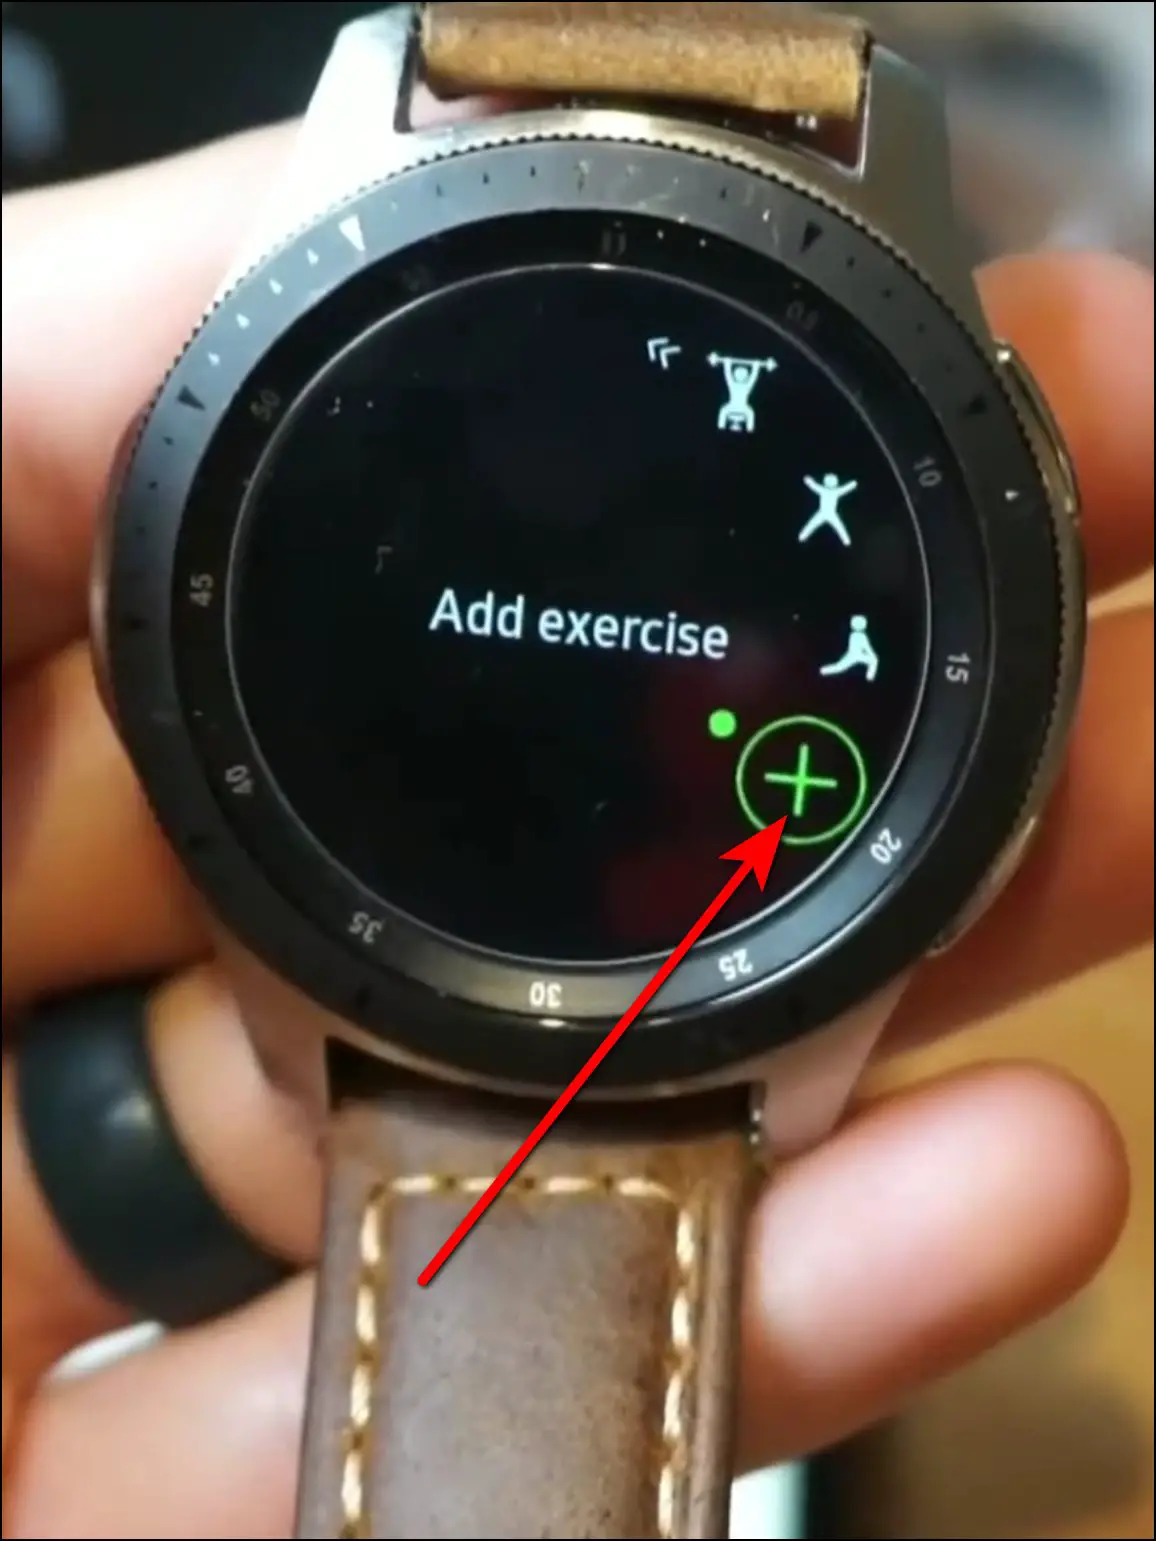 Add Yoga Mode on Samsung Gear